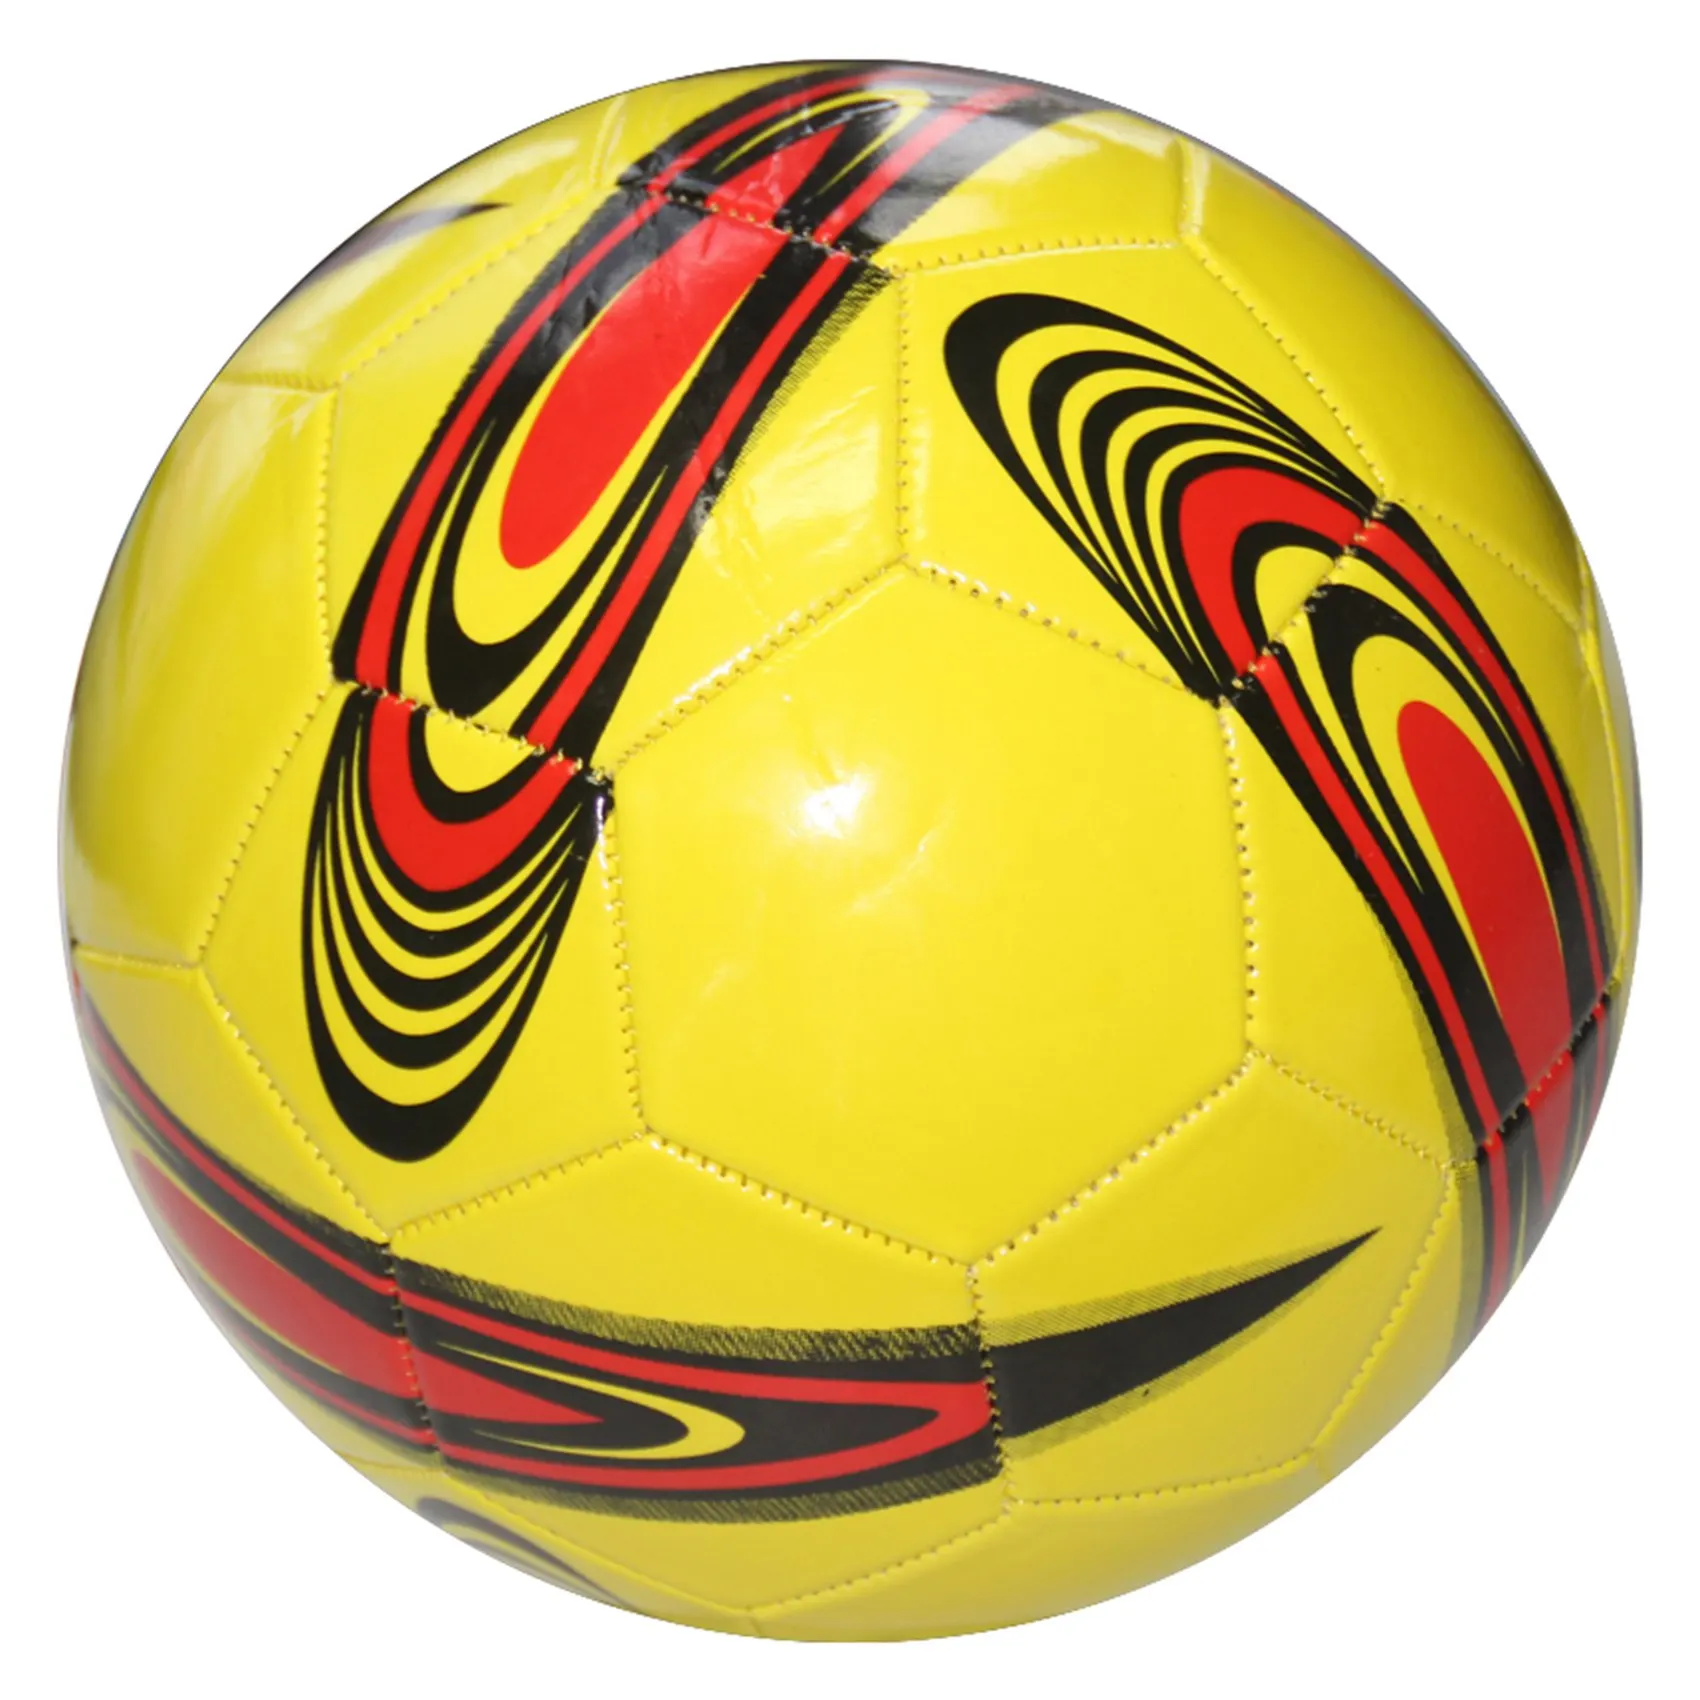 

Размер 5, профессиональный футбольный матч, спортивный тренировочный мяч, размер 5, футбольные мячи, уличные спортивные тренировочные мячи, желтый